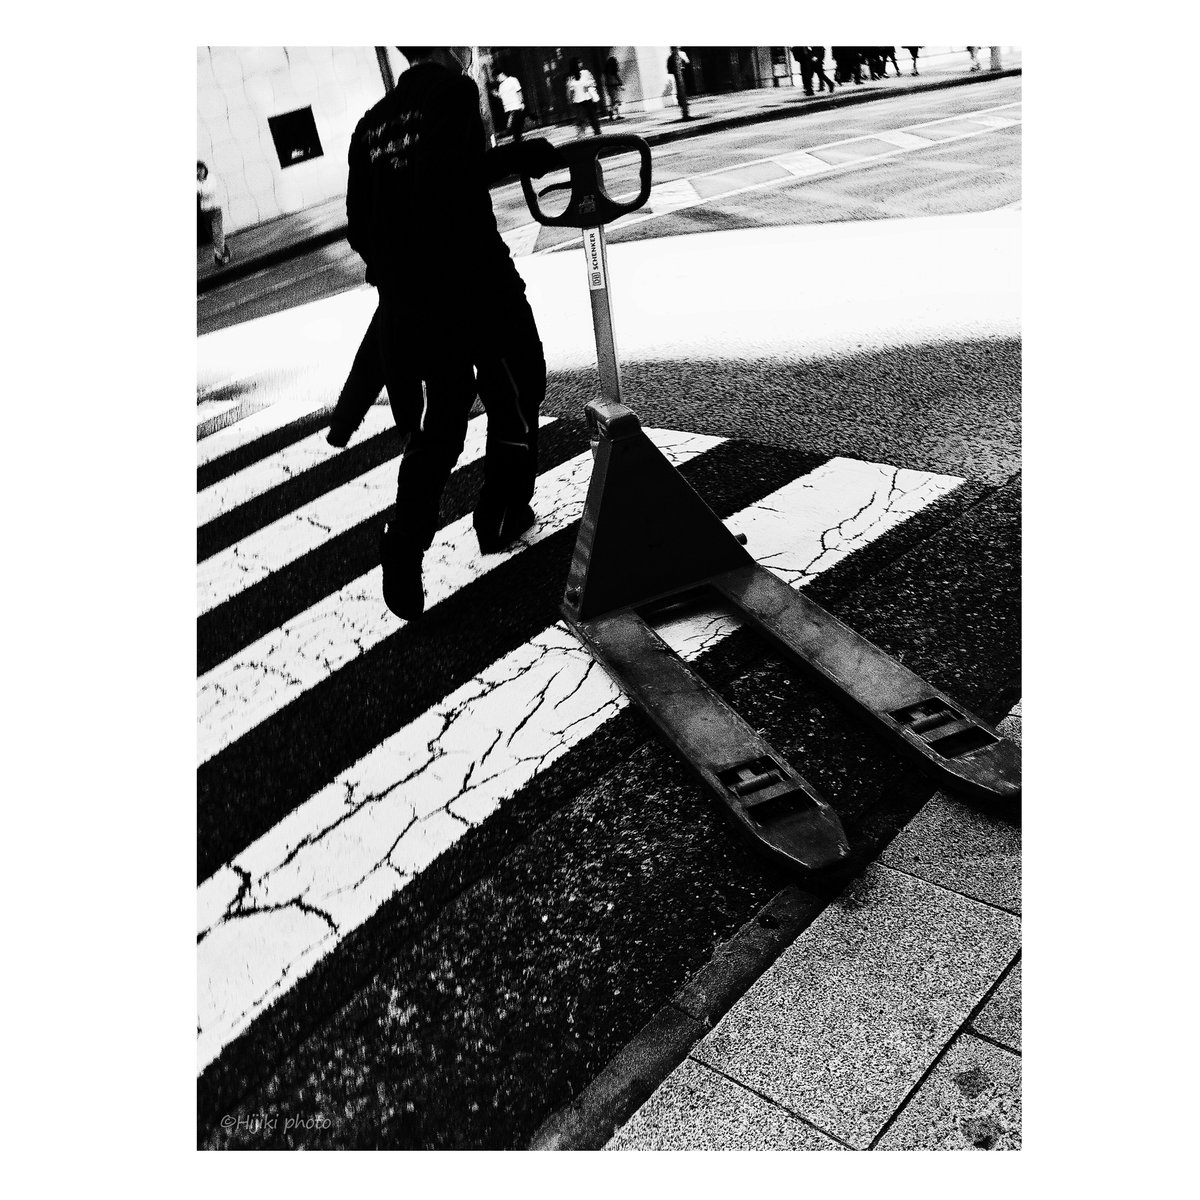 現場の人々            

#ストリートスナップ #東京 #率直で遠慮のない写真 #Tokyo #Japan #candid #snapshot #BlackandWhite #bnwphotography #bnw #streetshots #monochrome #streetphotography #blackandwhitephotography